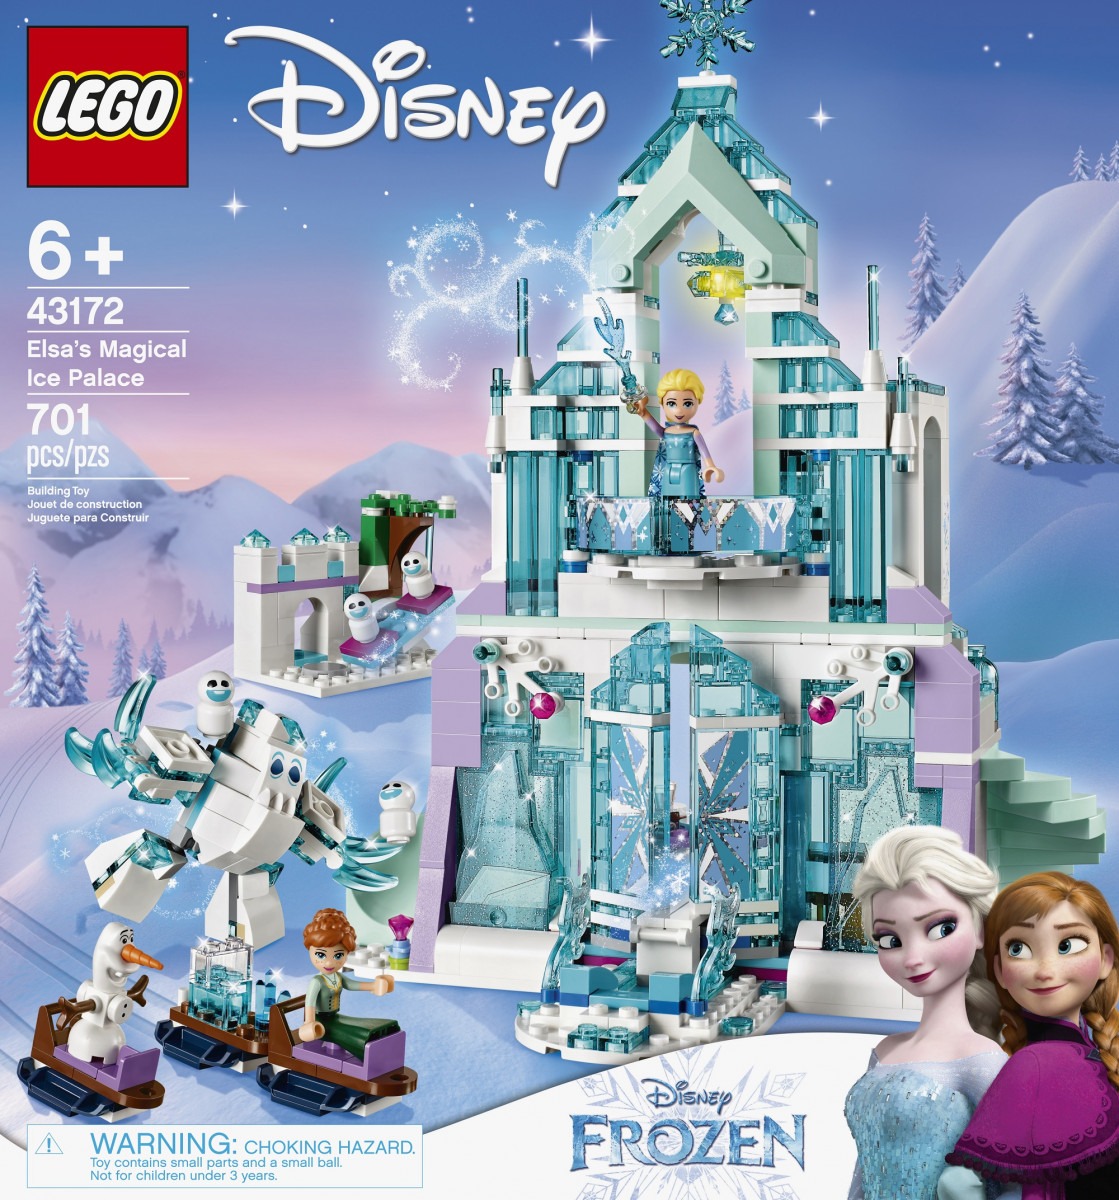 LEGO releases seven Frozen 2 tie-in sets